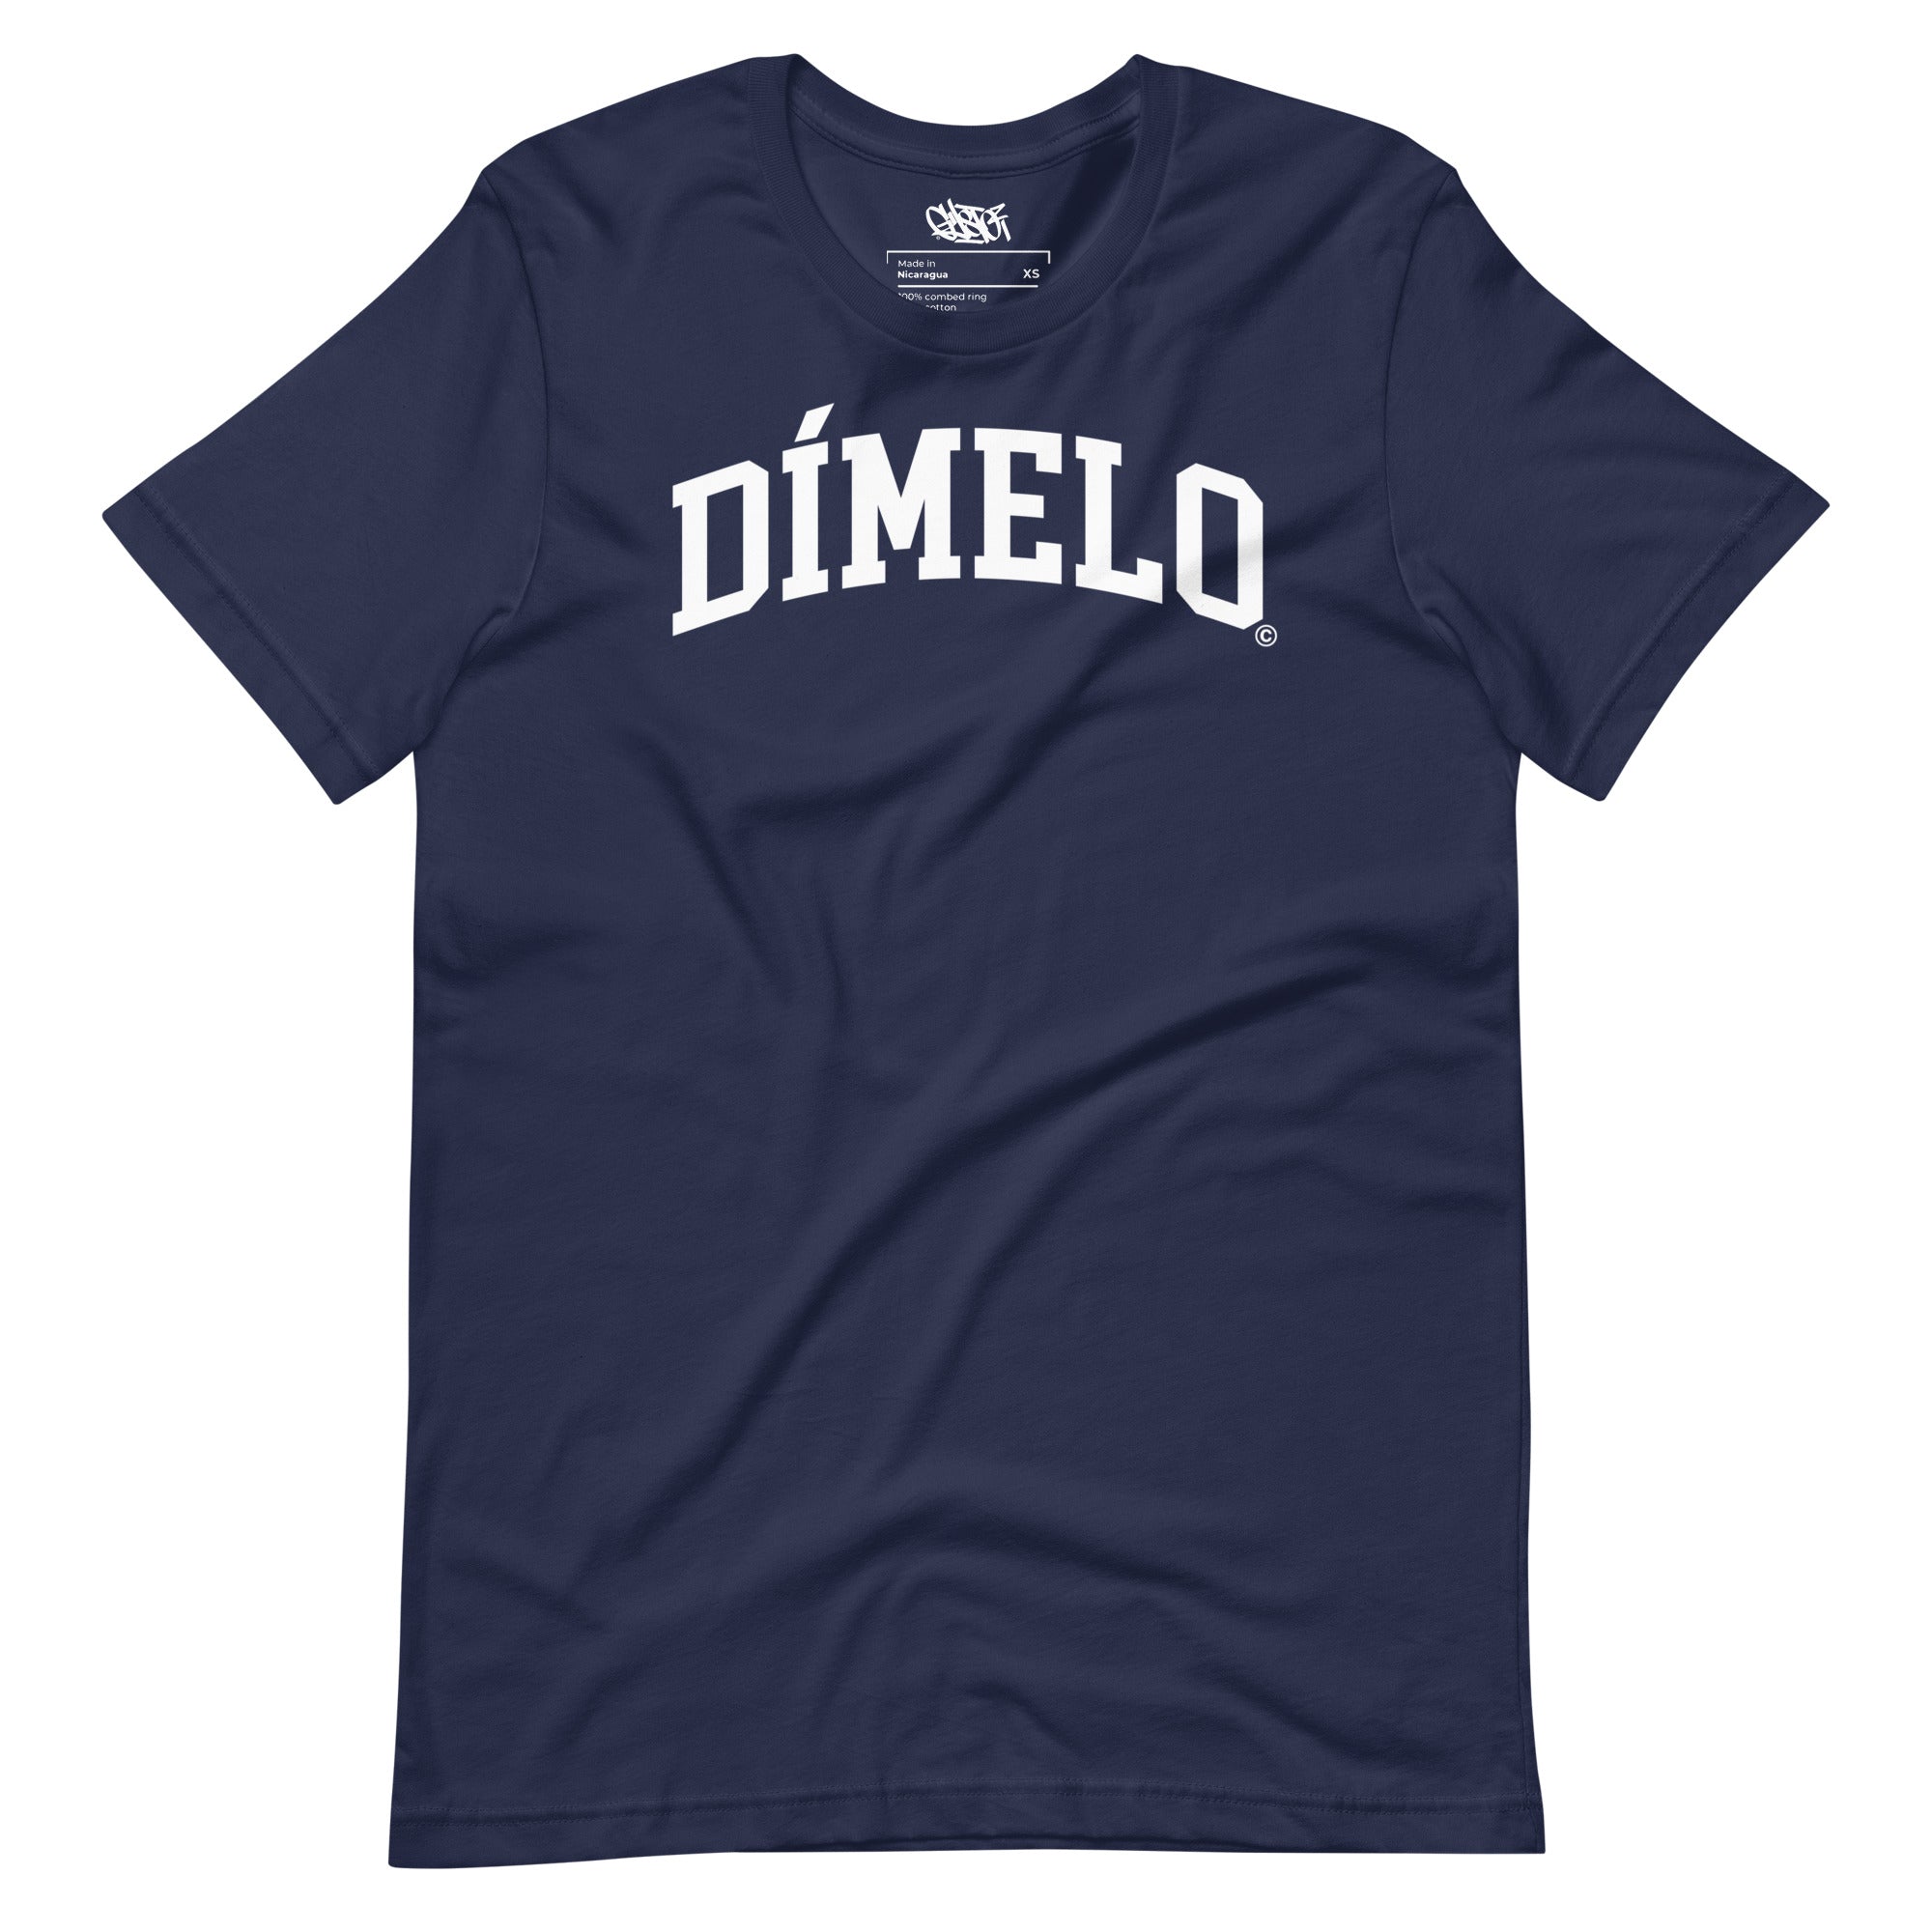 Dimelo - Unisex T-Shirt